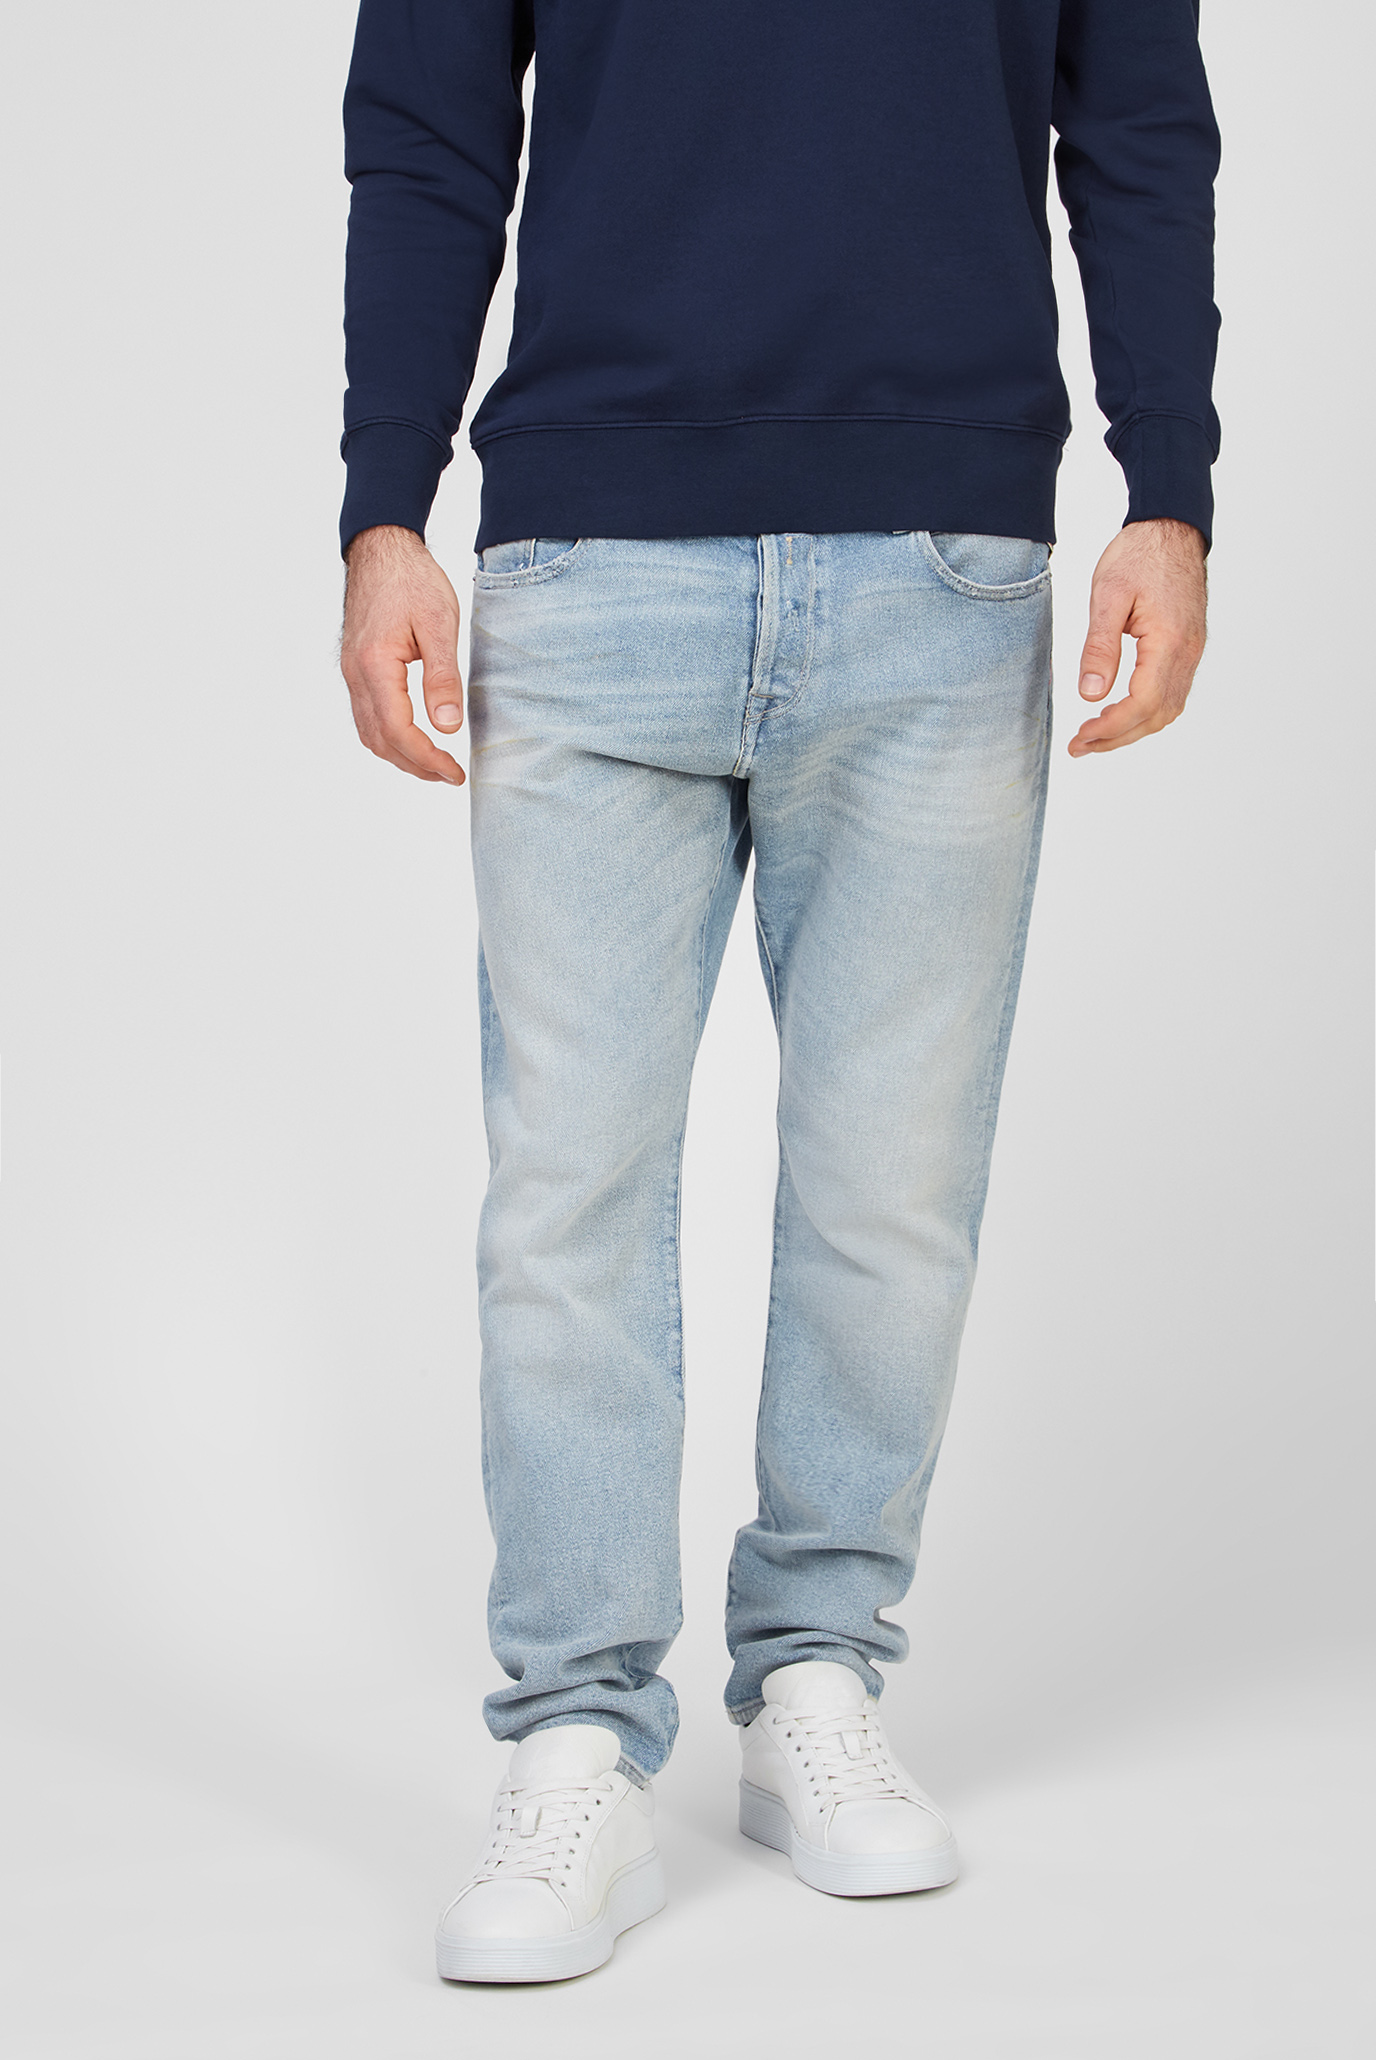 Чоловічі блакитні джинси Tinmar 1